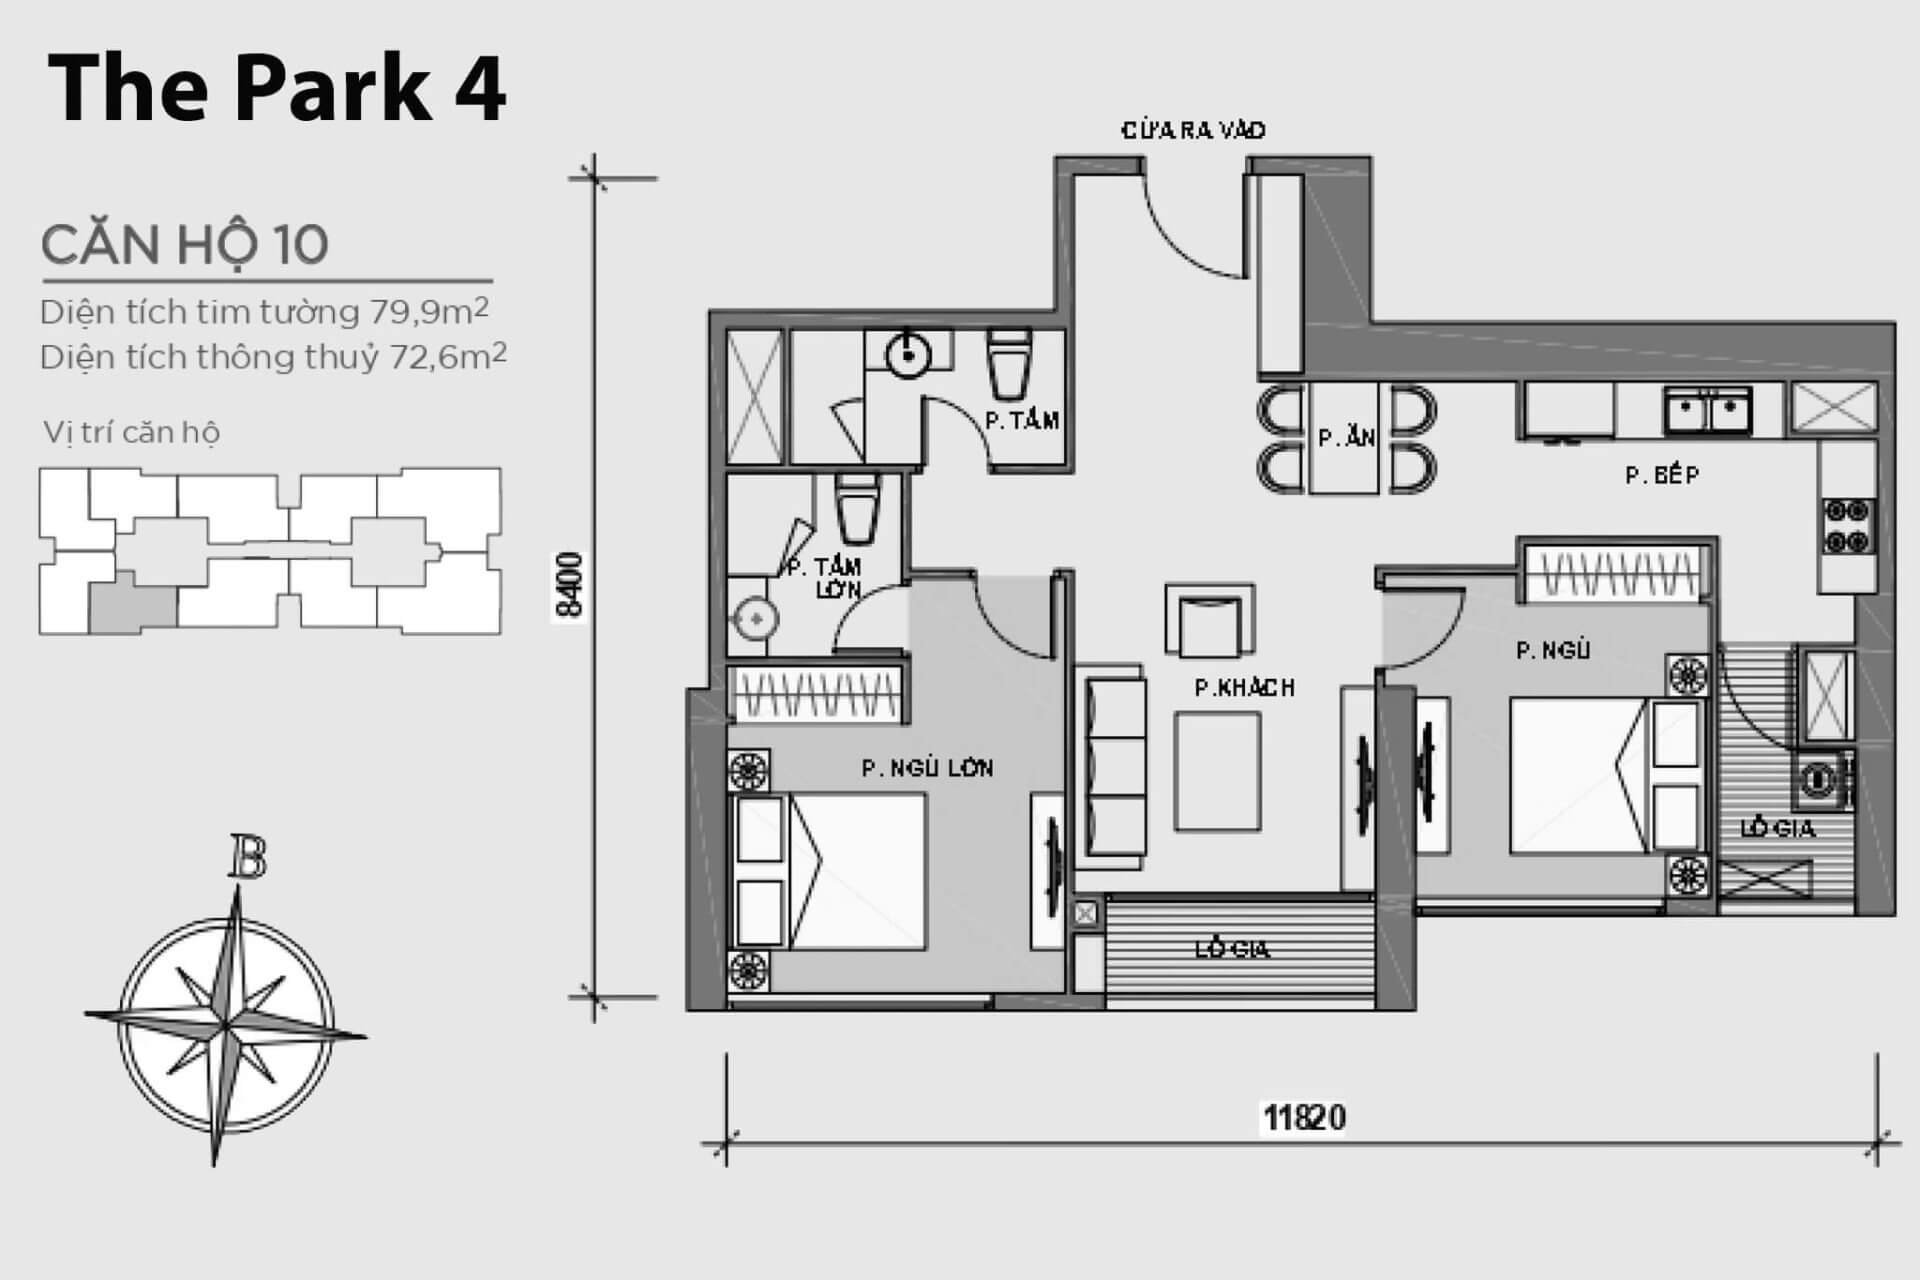 mặt bằng layout căn hộ số 10 Park 4 Vinhomes Central Park